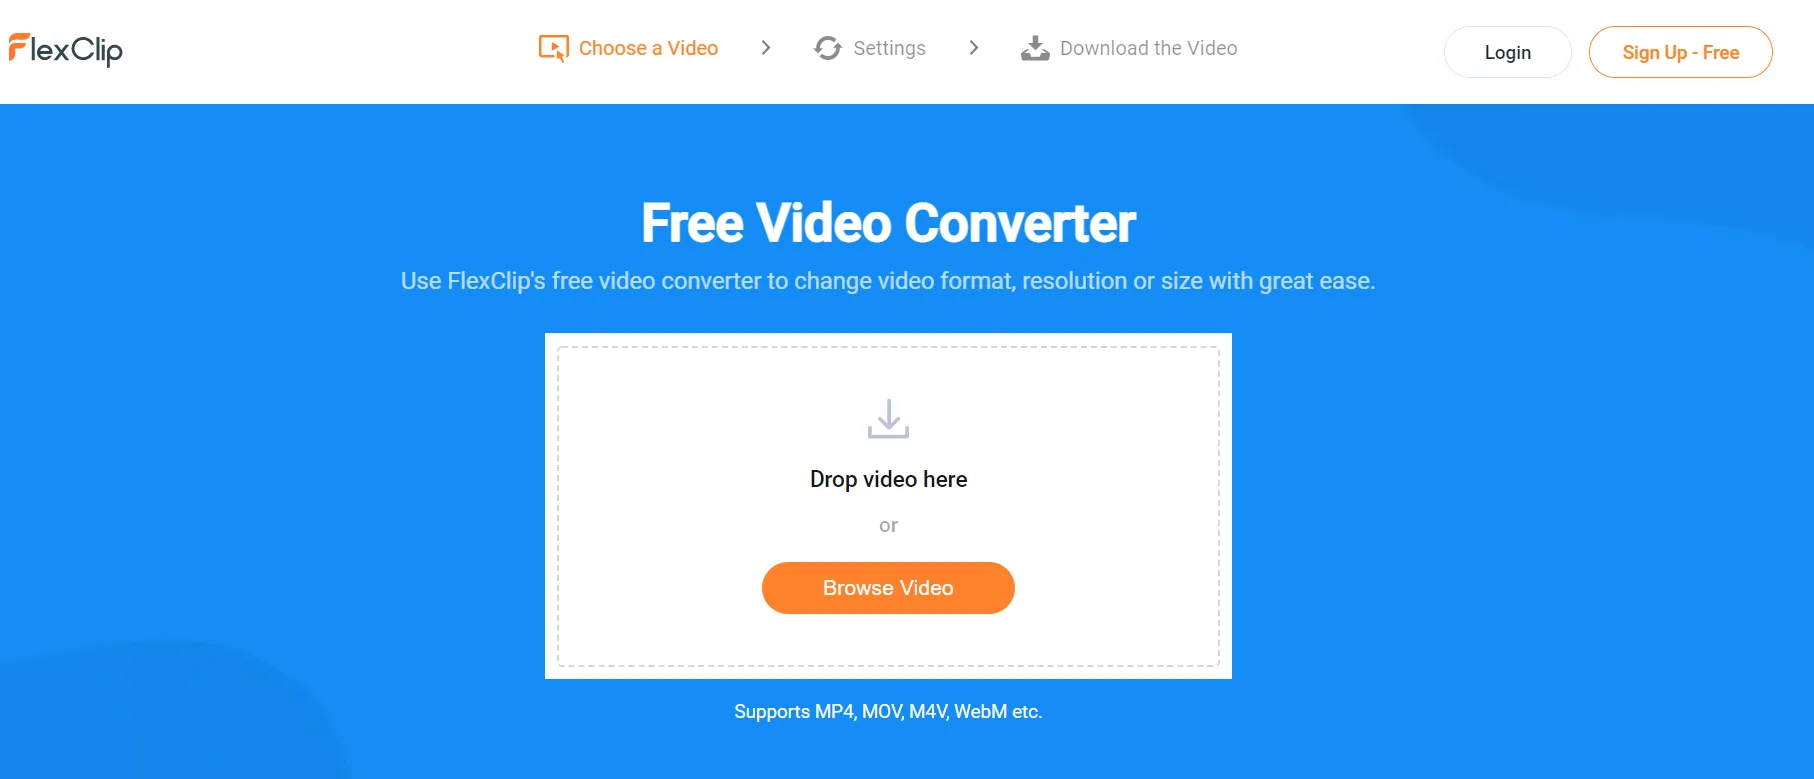 flexclip-online-video-converter